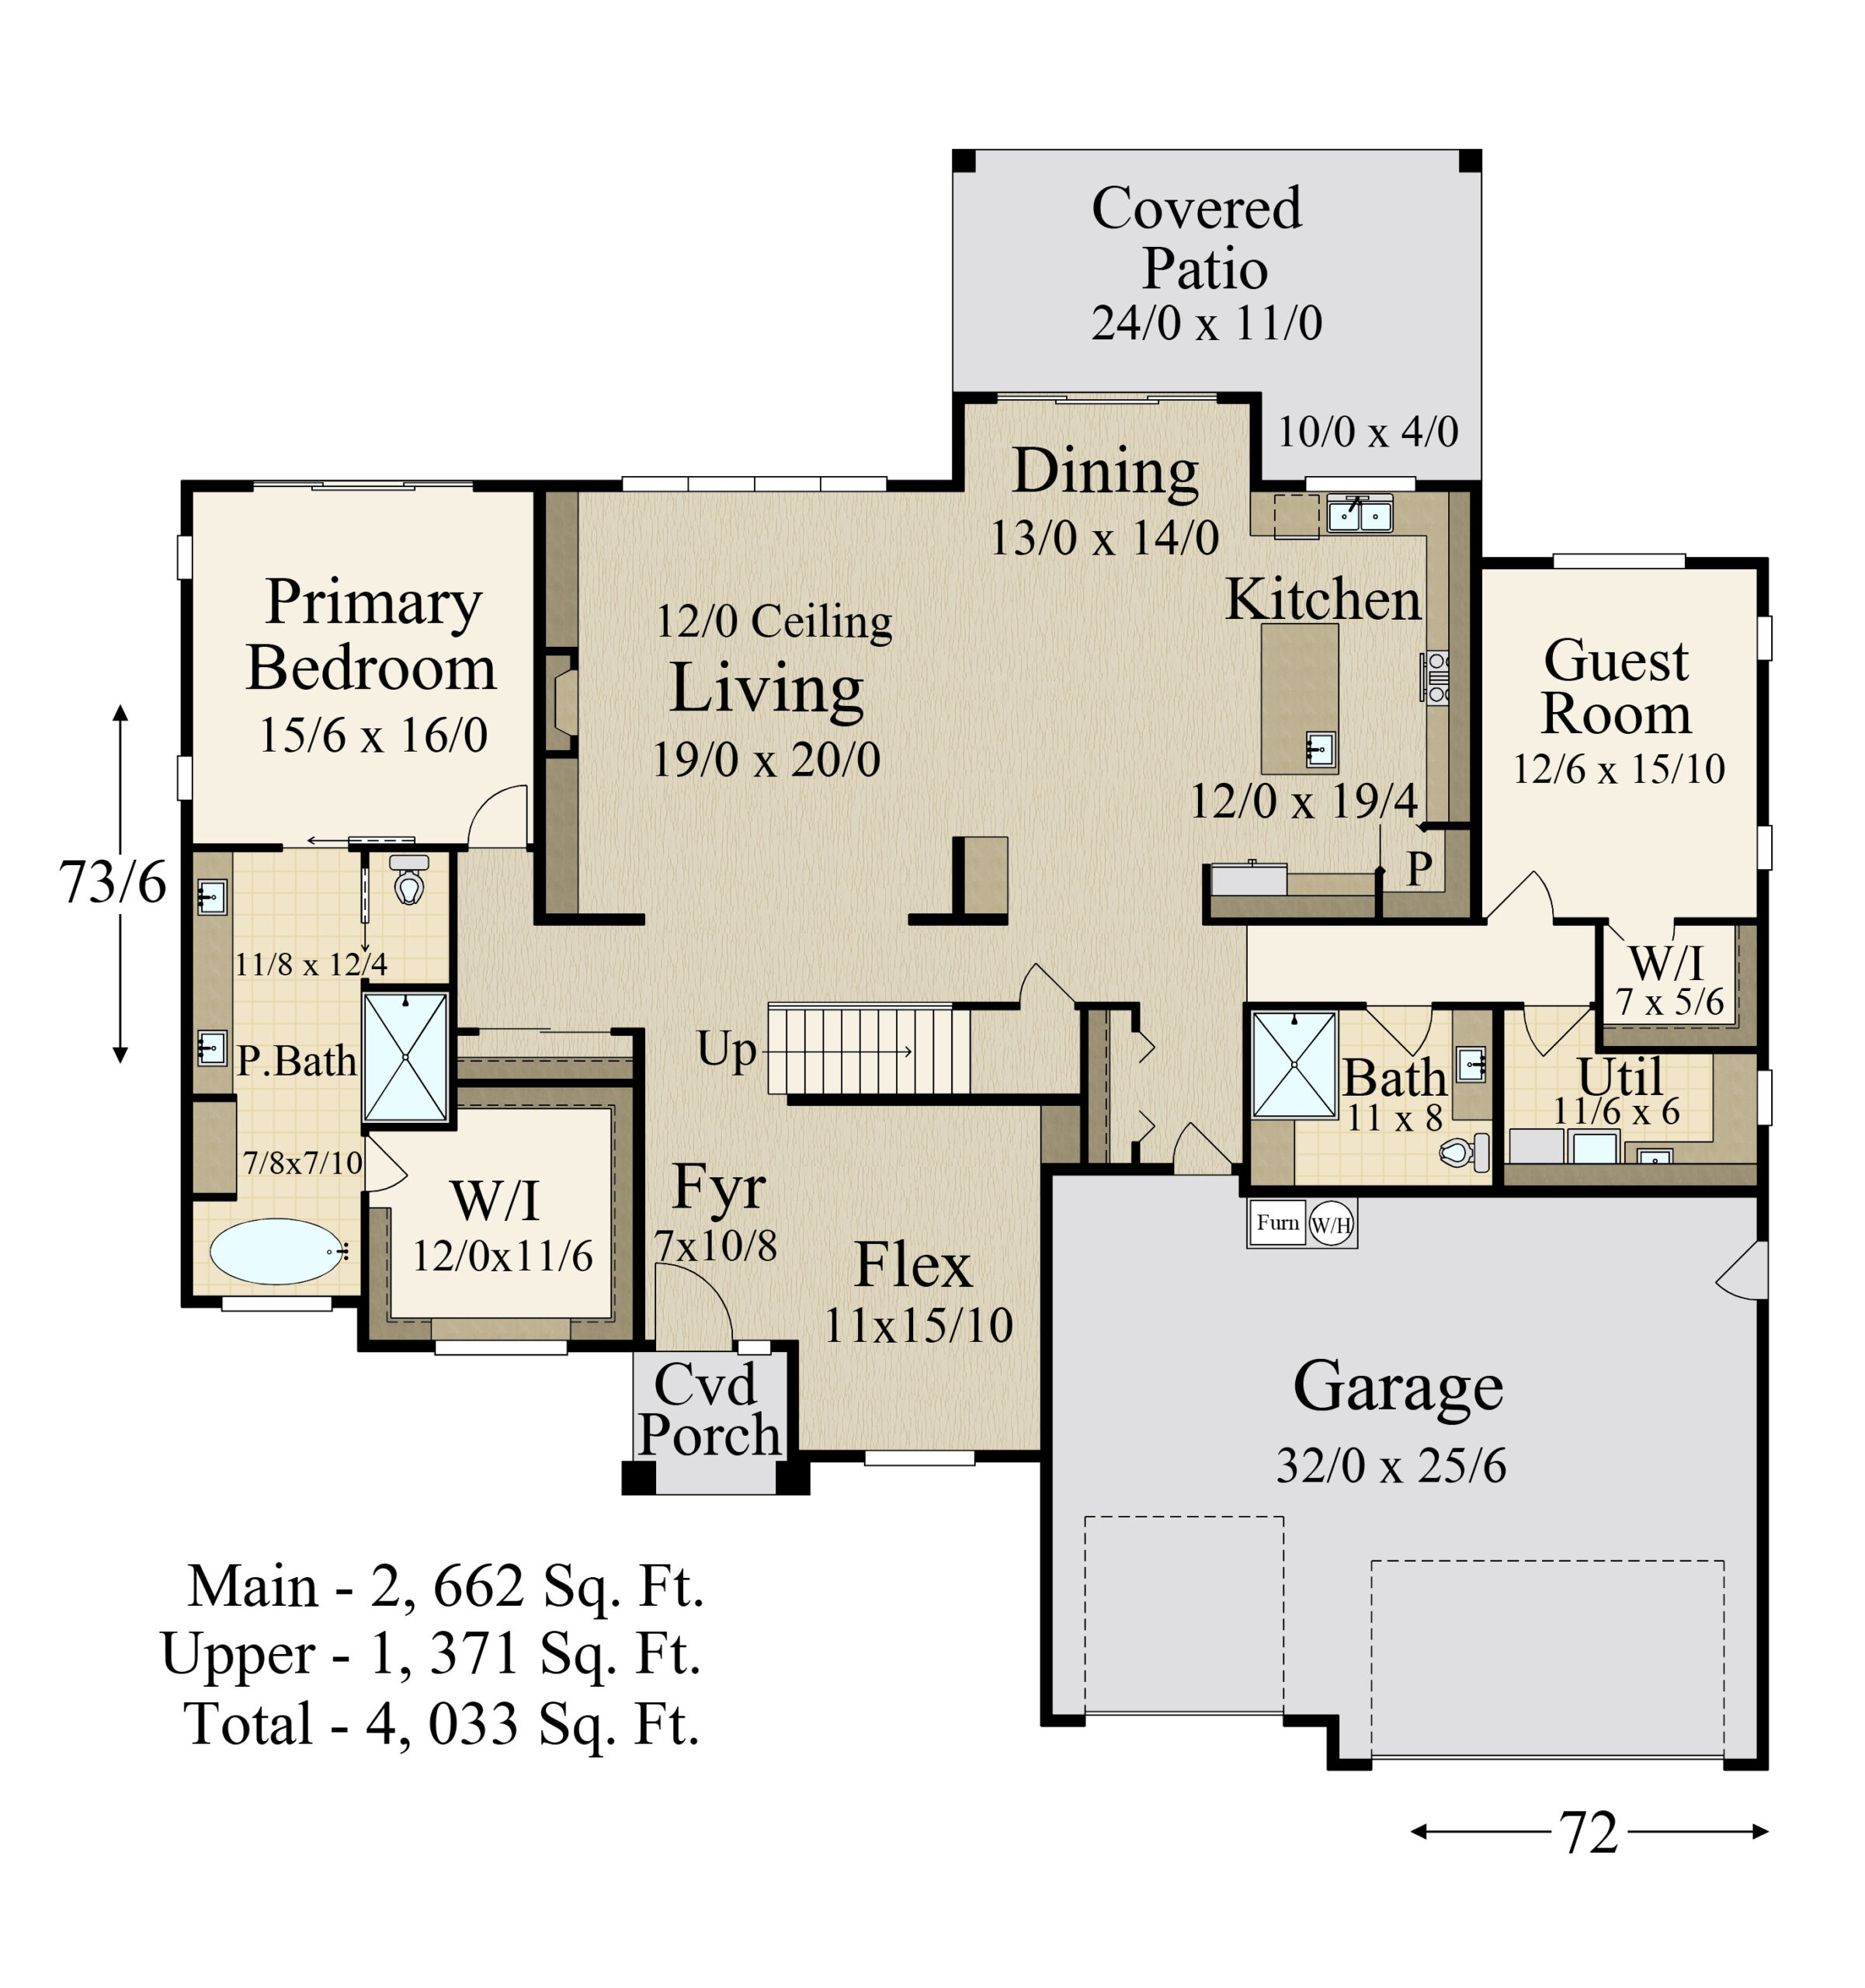 7 Floor Plans of Celebrity Bedrooms - HomeAdvisor